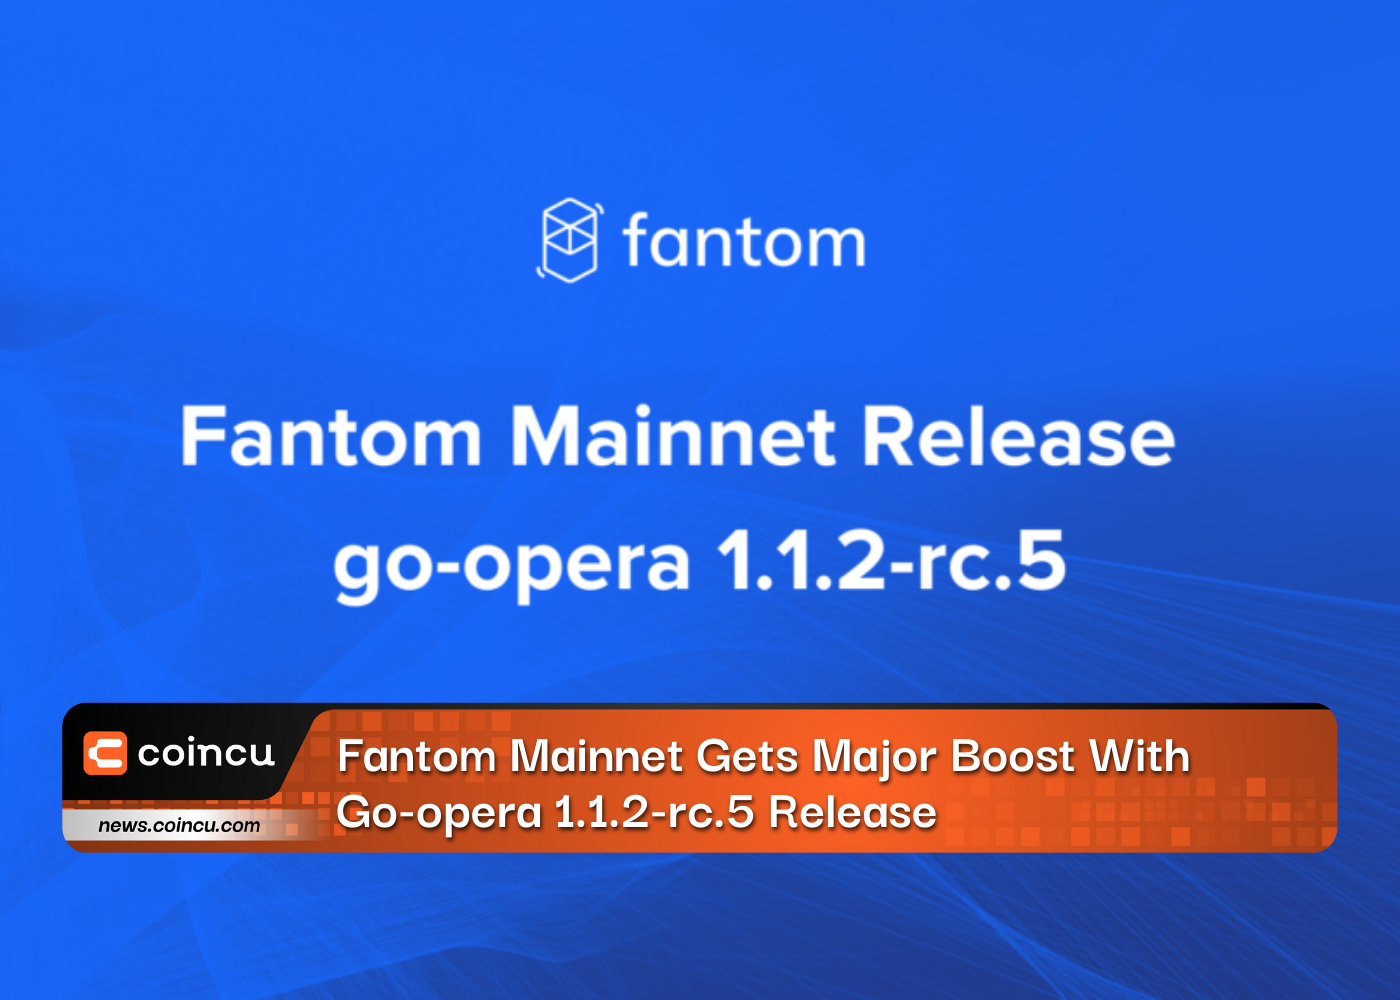 Fantom Mainnet ganha grande impulso com lançamento do Go-opera 1.1.2-rc.5